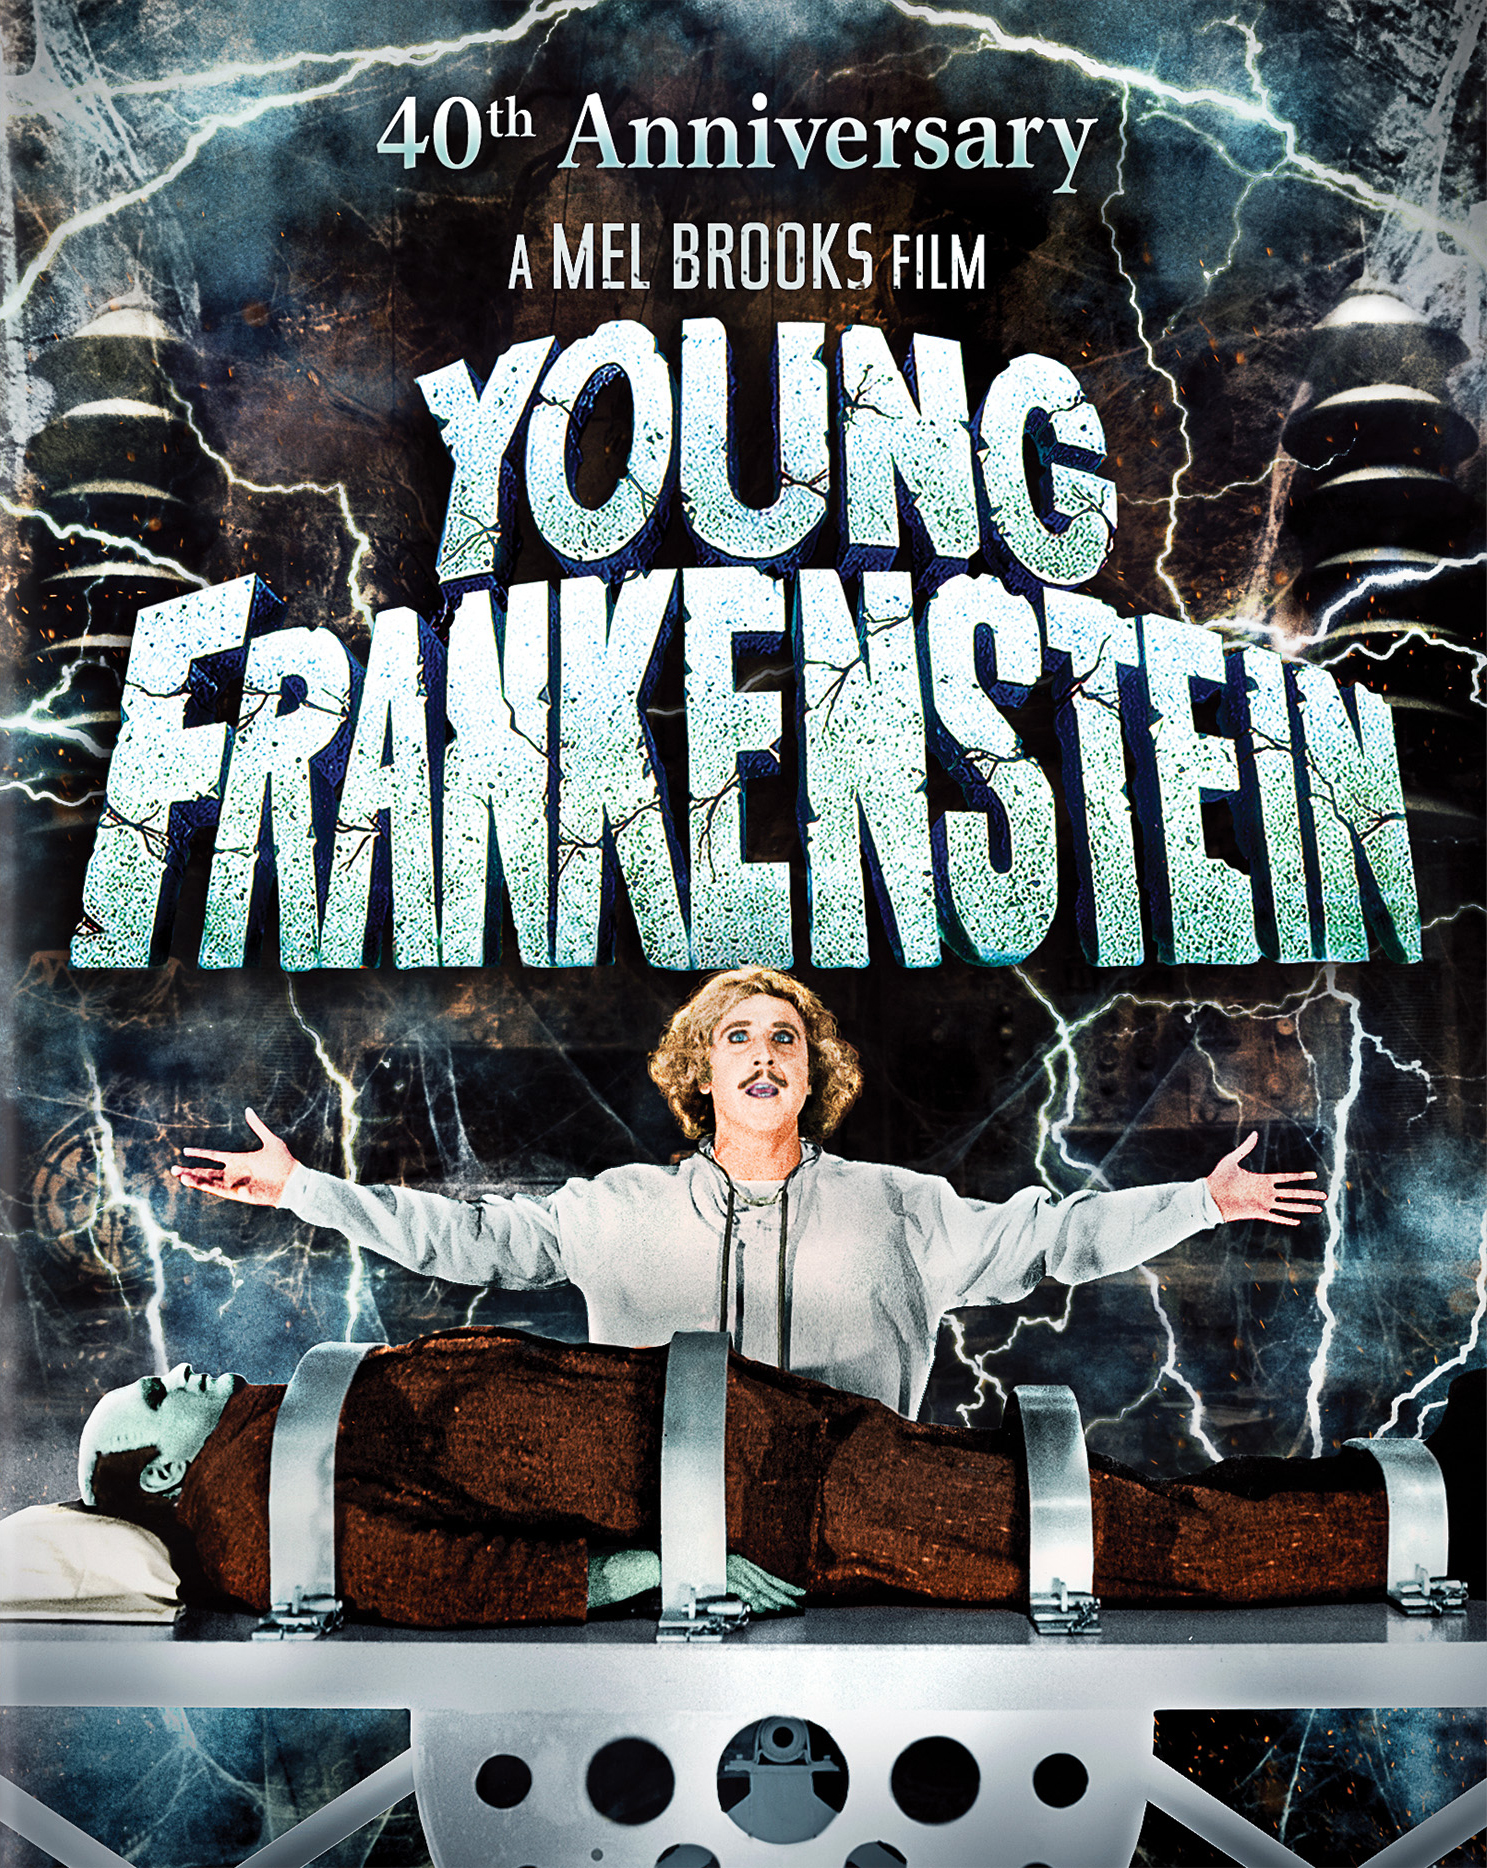 Az ifjú Frankenstein